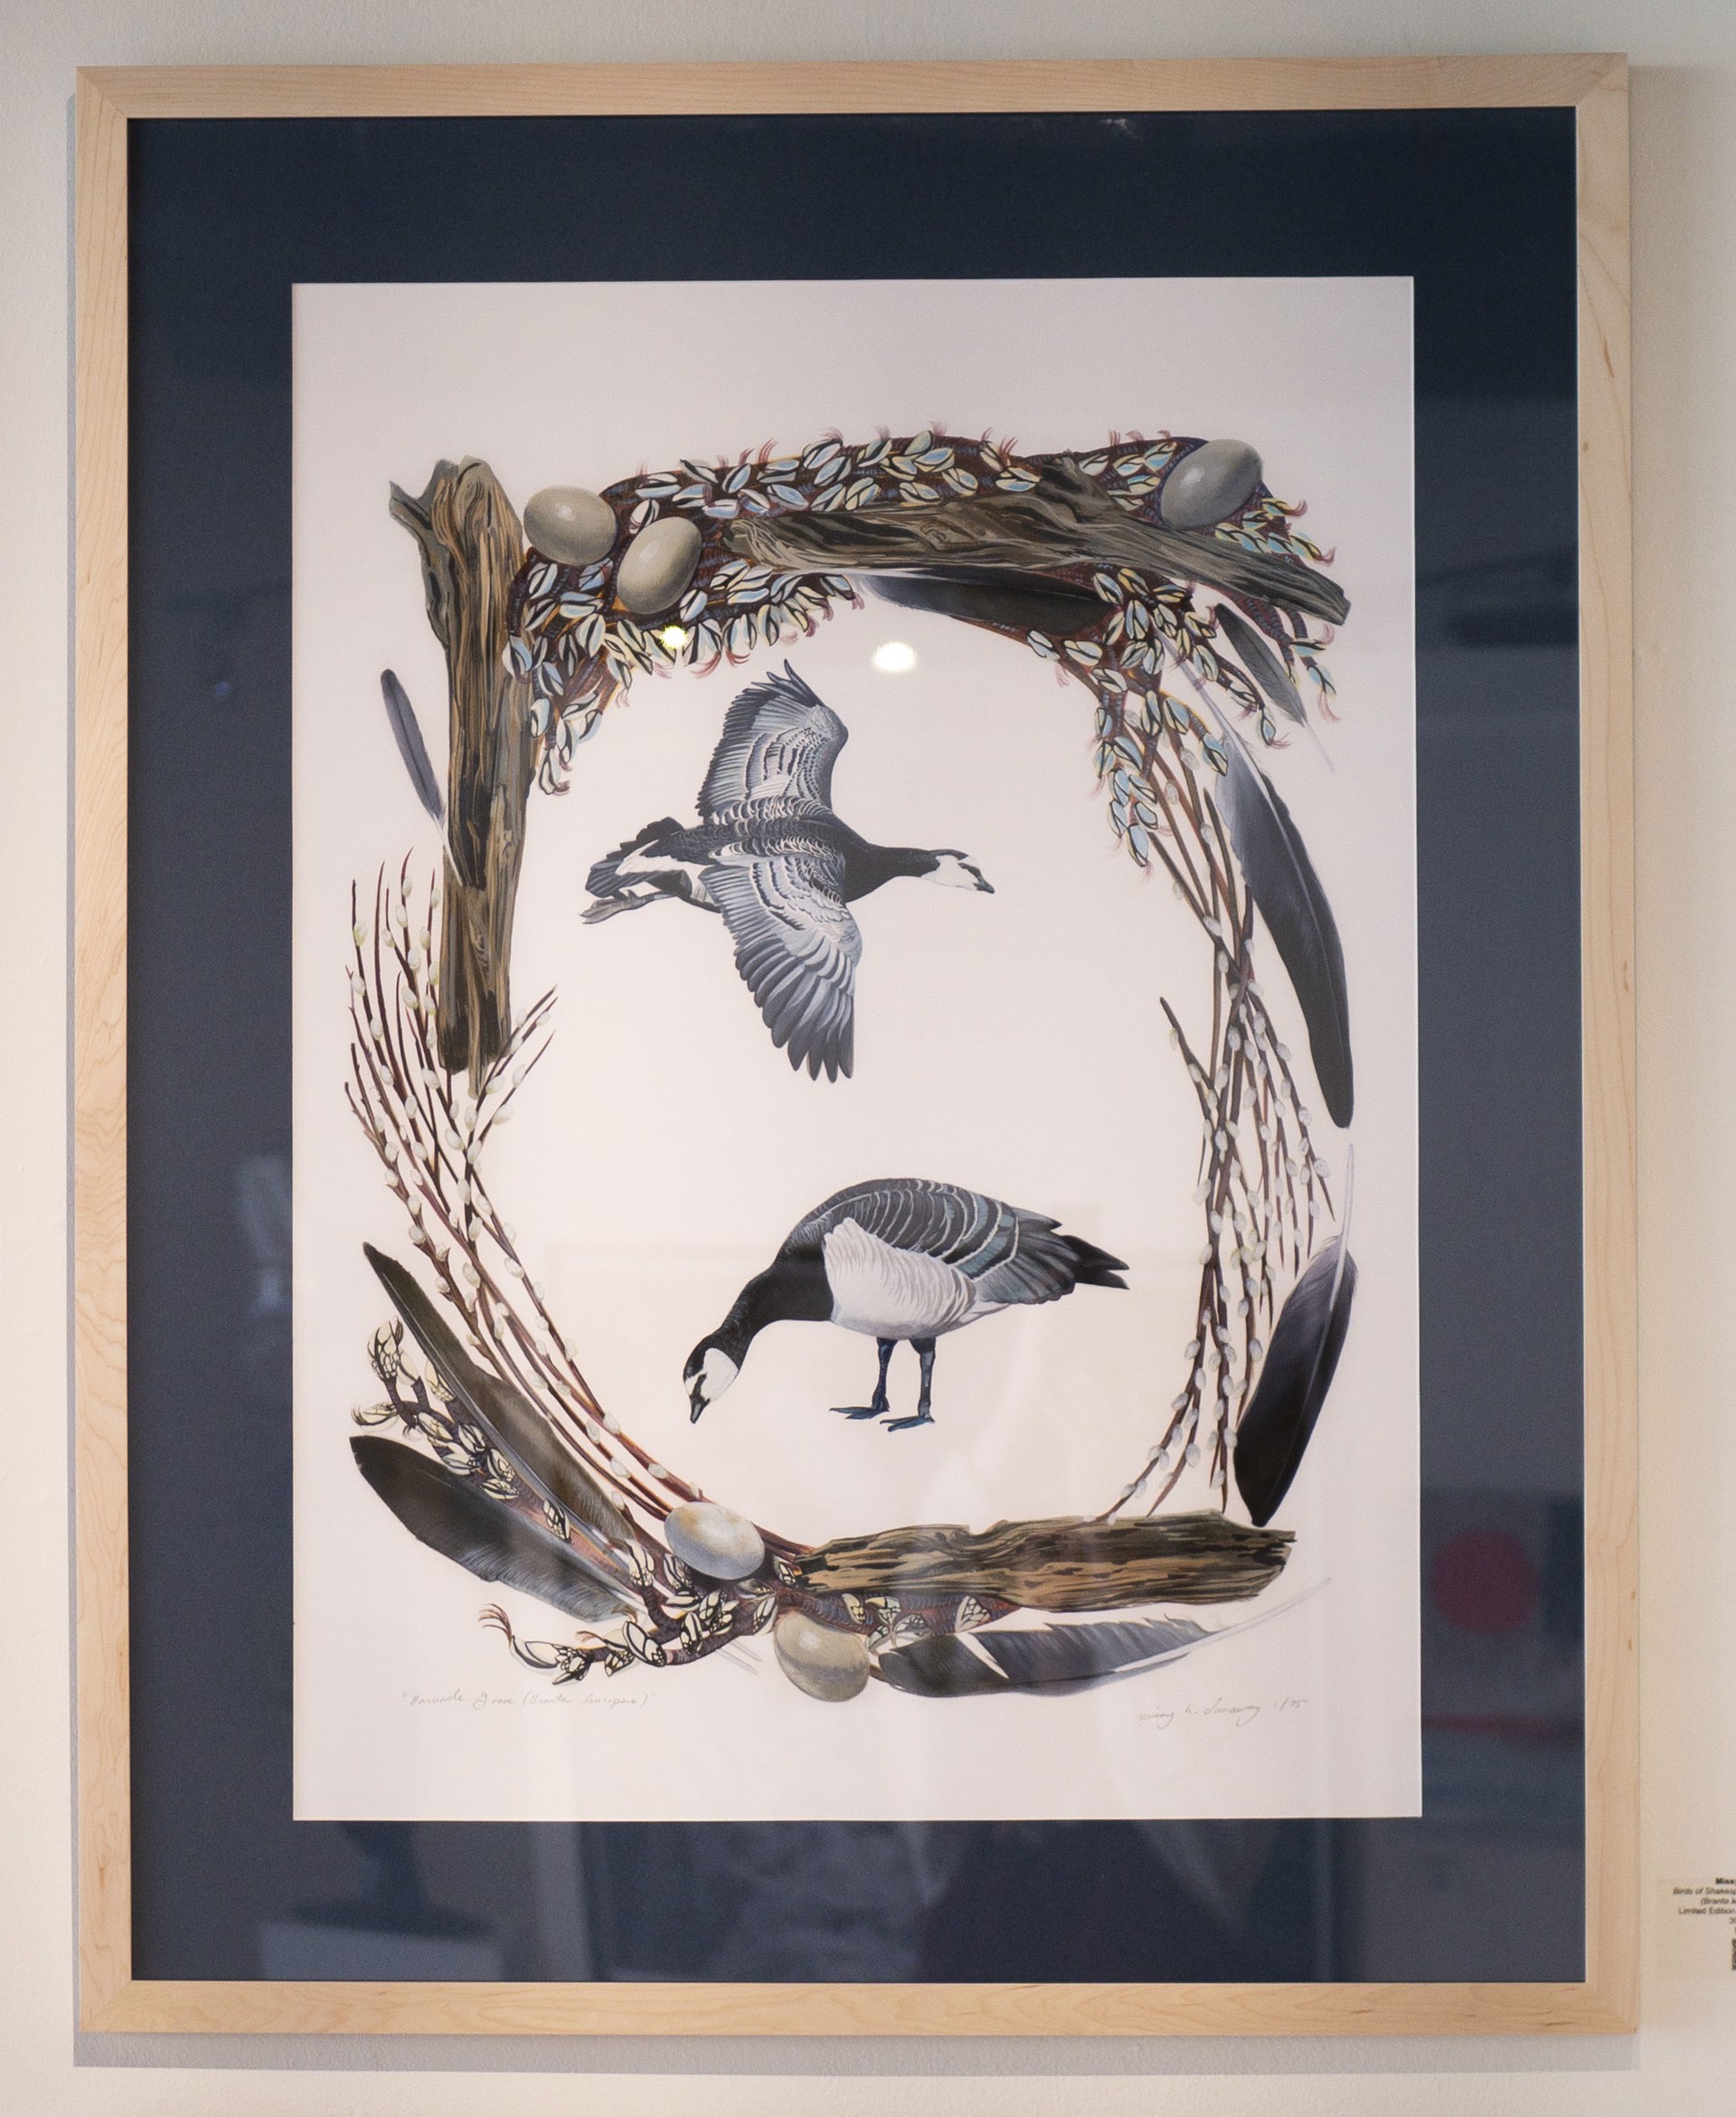 Birds of Shakespeare: Barnacle Goose (Branta leucopsis) by Missy Dunaway